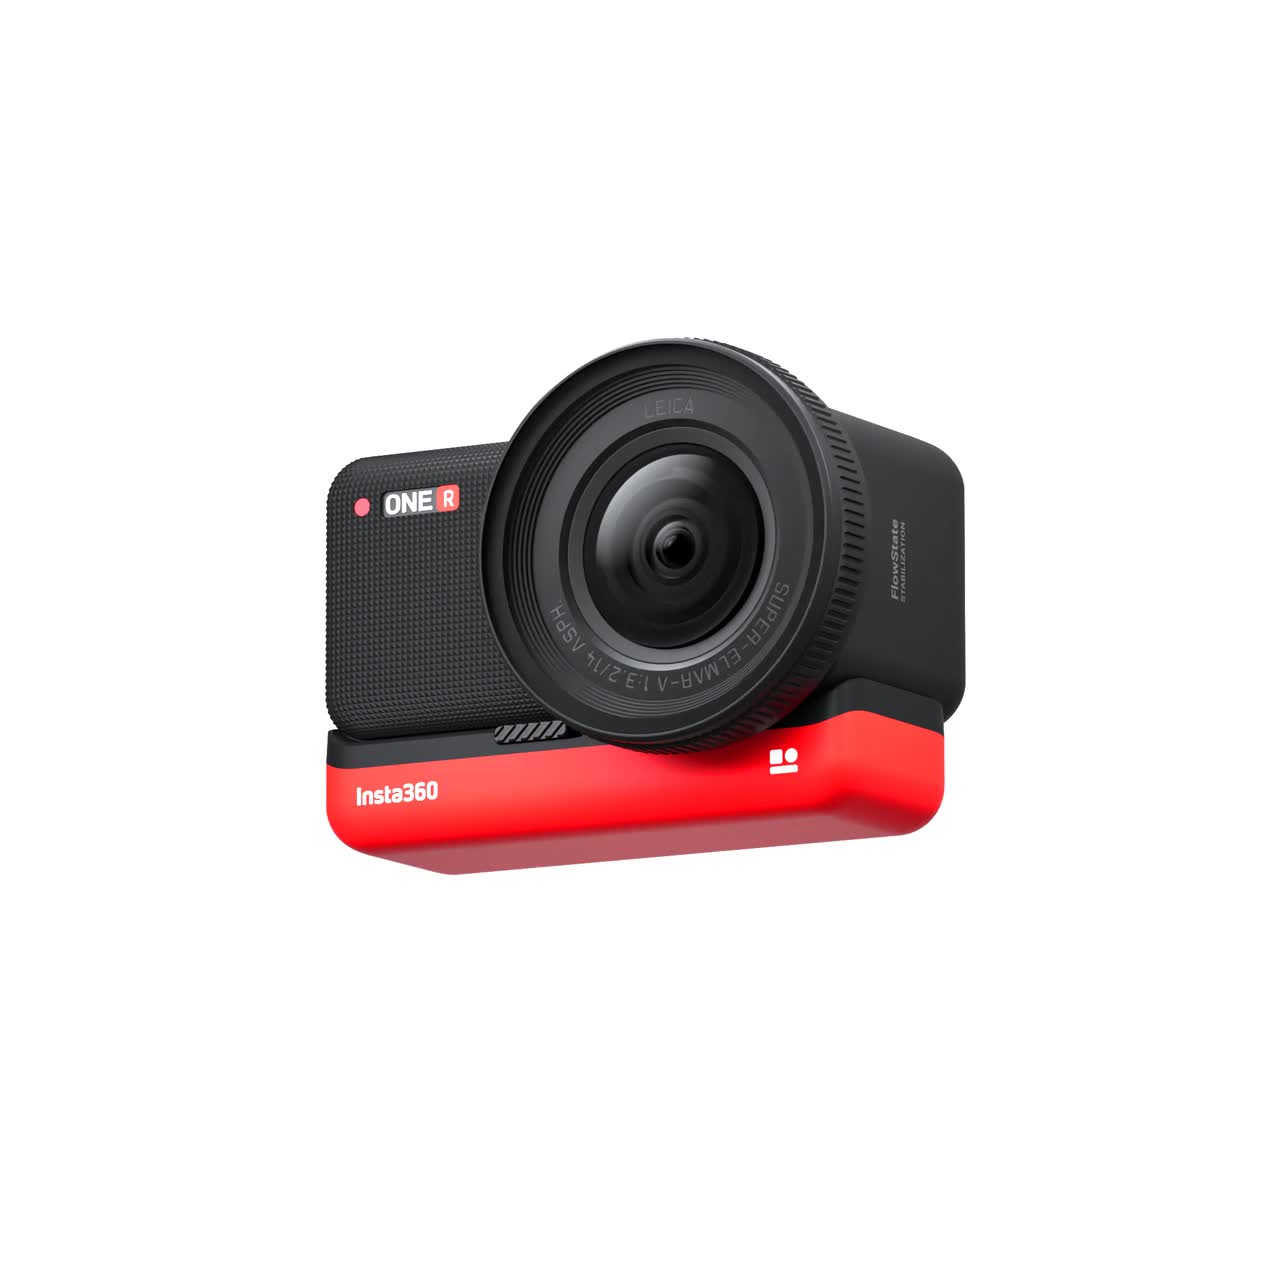 Für Insta360 ONE R 1 ZOLL LEICA Kamera 60M Tauchschutzhülle mit Objektivfilter 